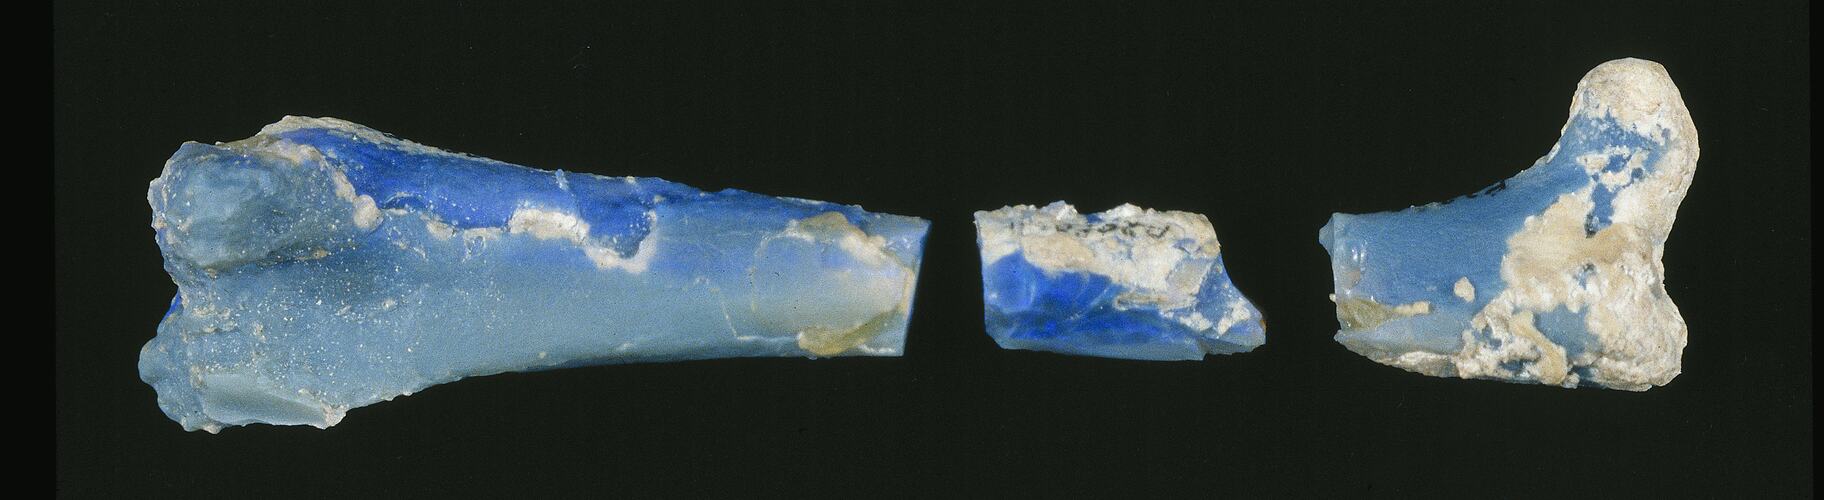 Iridescent blue bone specimen in three parts.